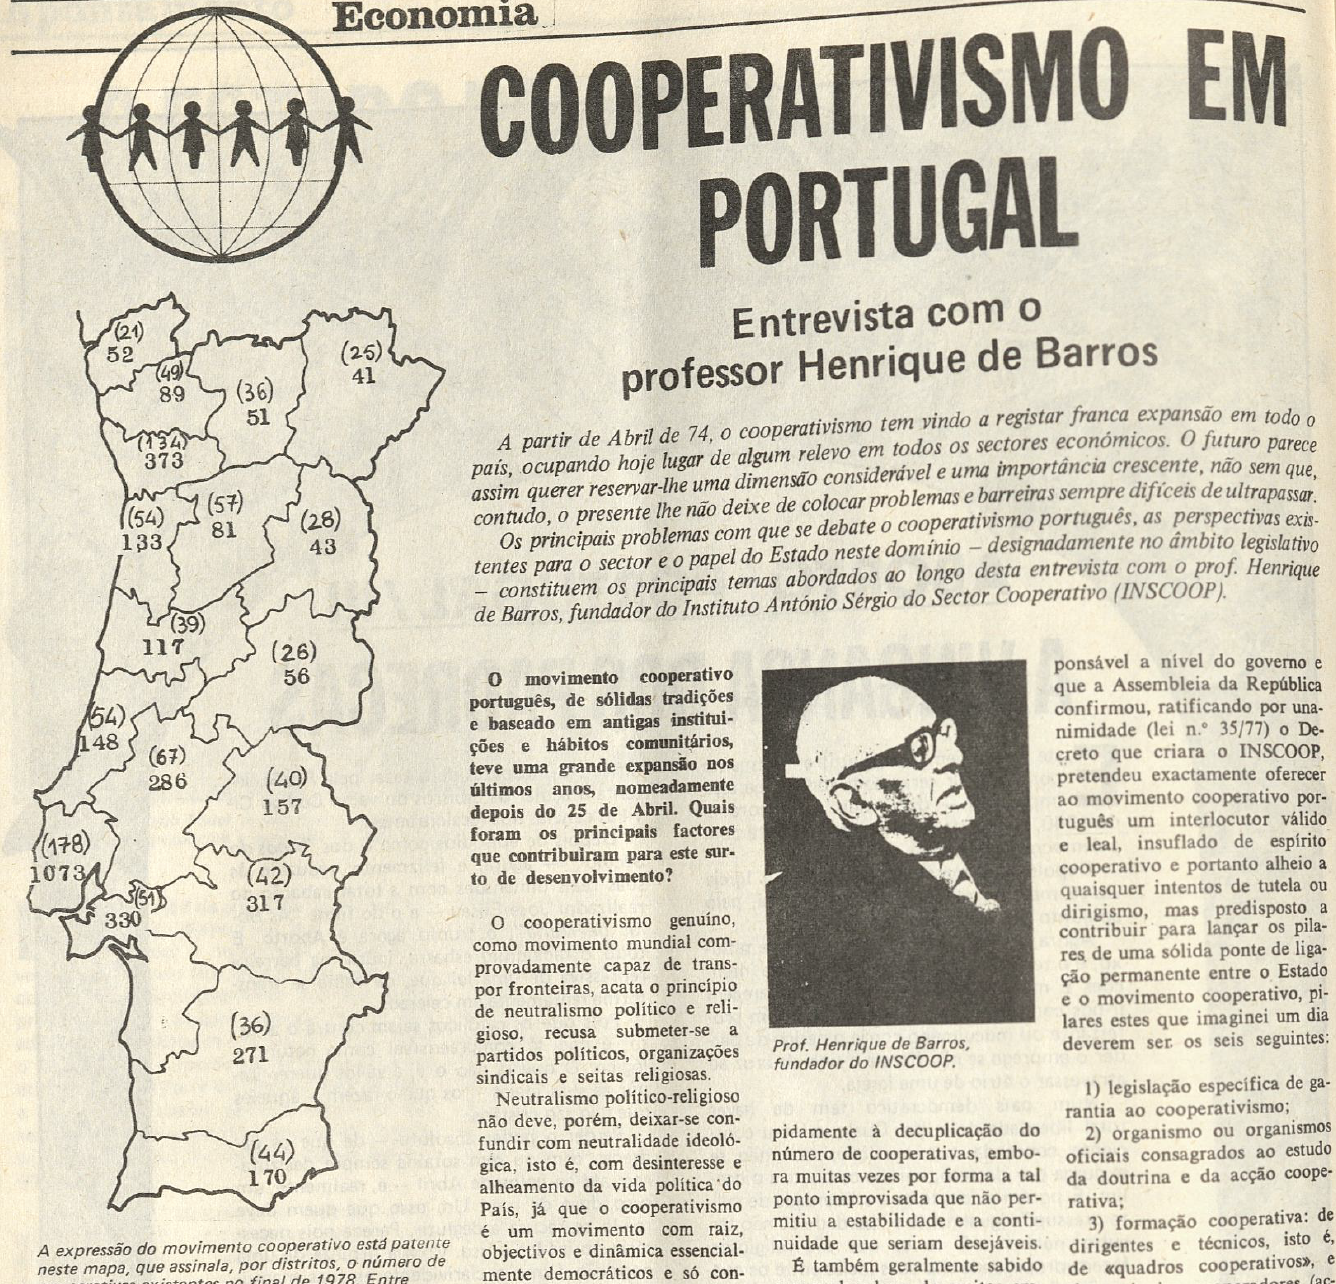 "Cooperativismo em Portugal"